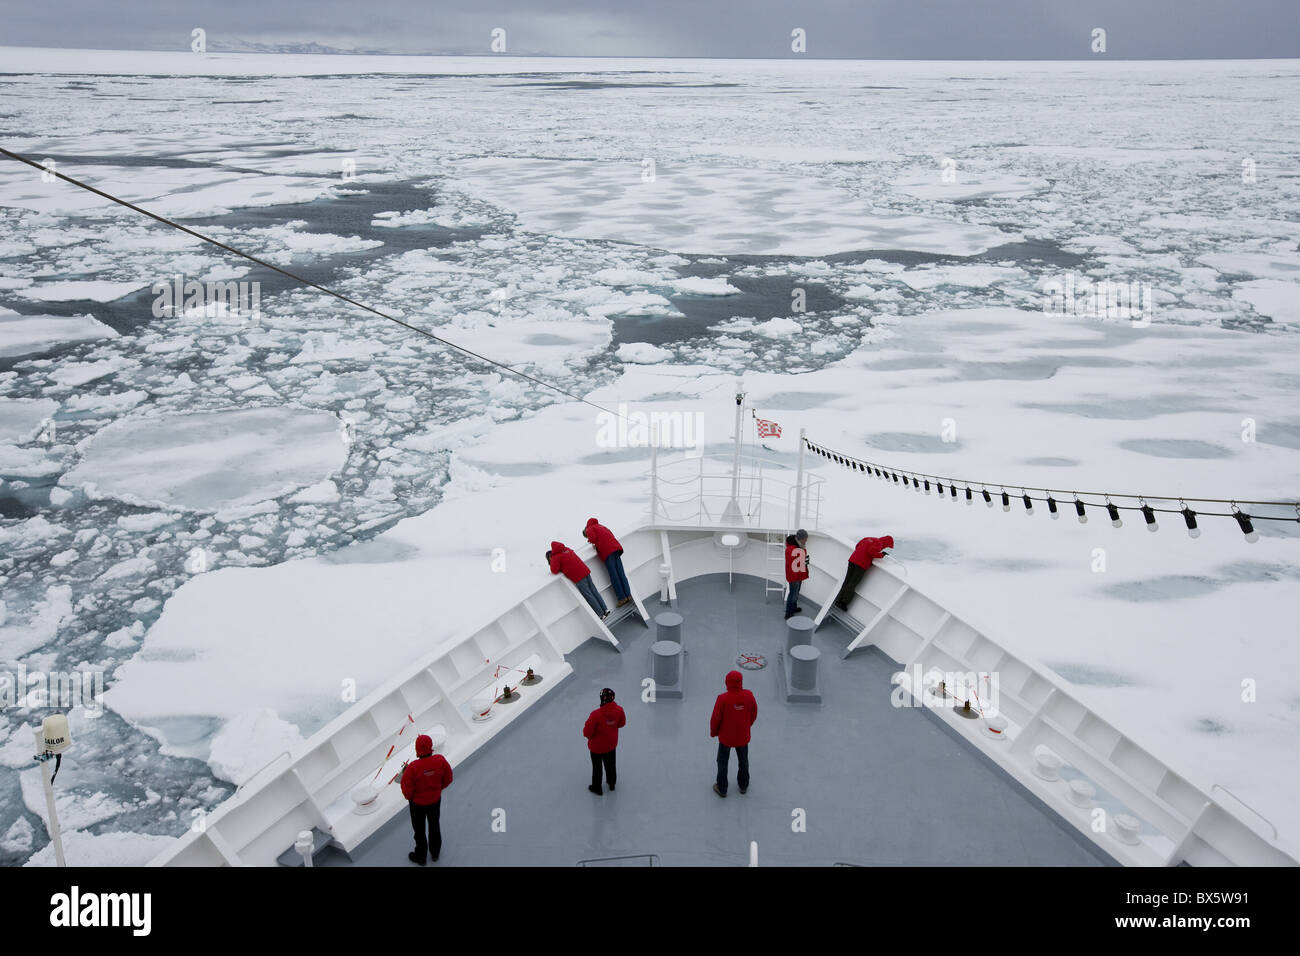 El desguace de buques a través de témpanos de hielo a la deriva, Groenlandia, el Ártico, las regiones polares Foto de stock